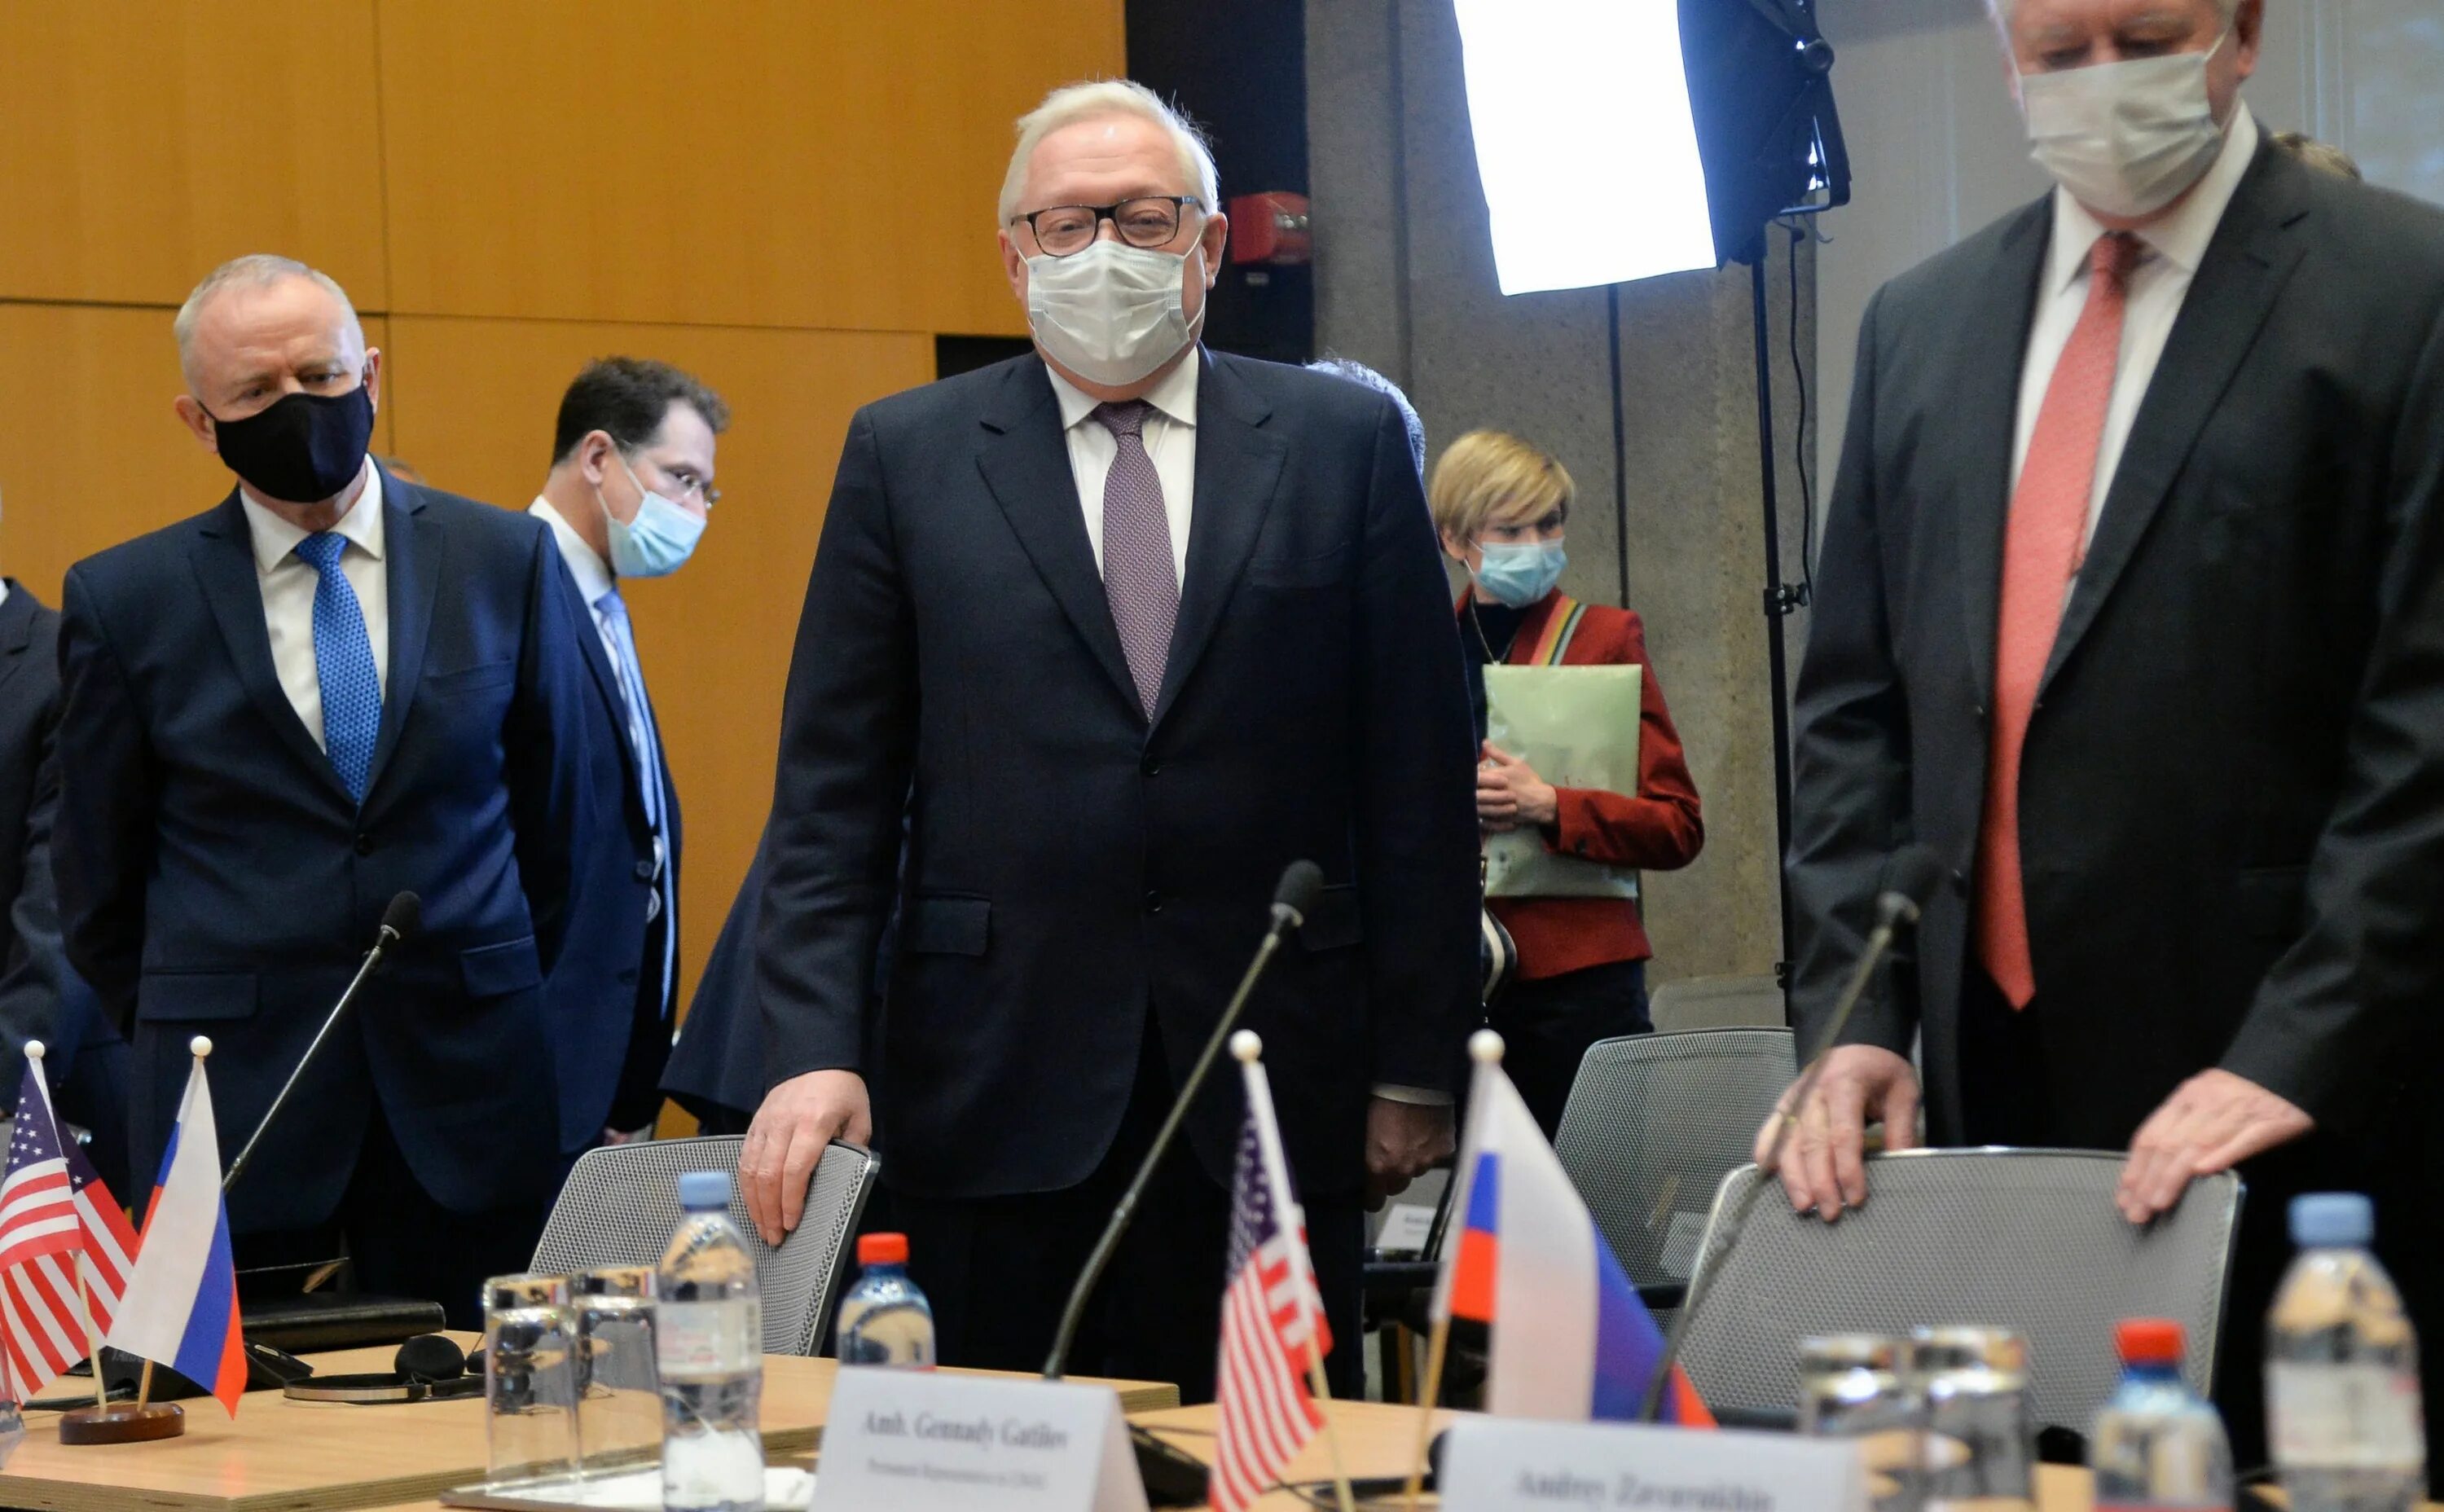 Провал переговоров. Рябков пресконыеренция в Женеве. 7 Апреля 2014 года в Женеве состоялась встреча. Швейцария с НАТО обсуждает открытие офиса в Женеве. Переговоры провал